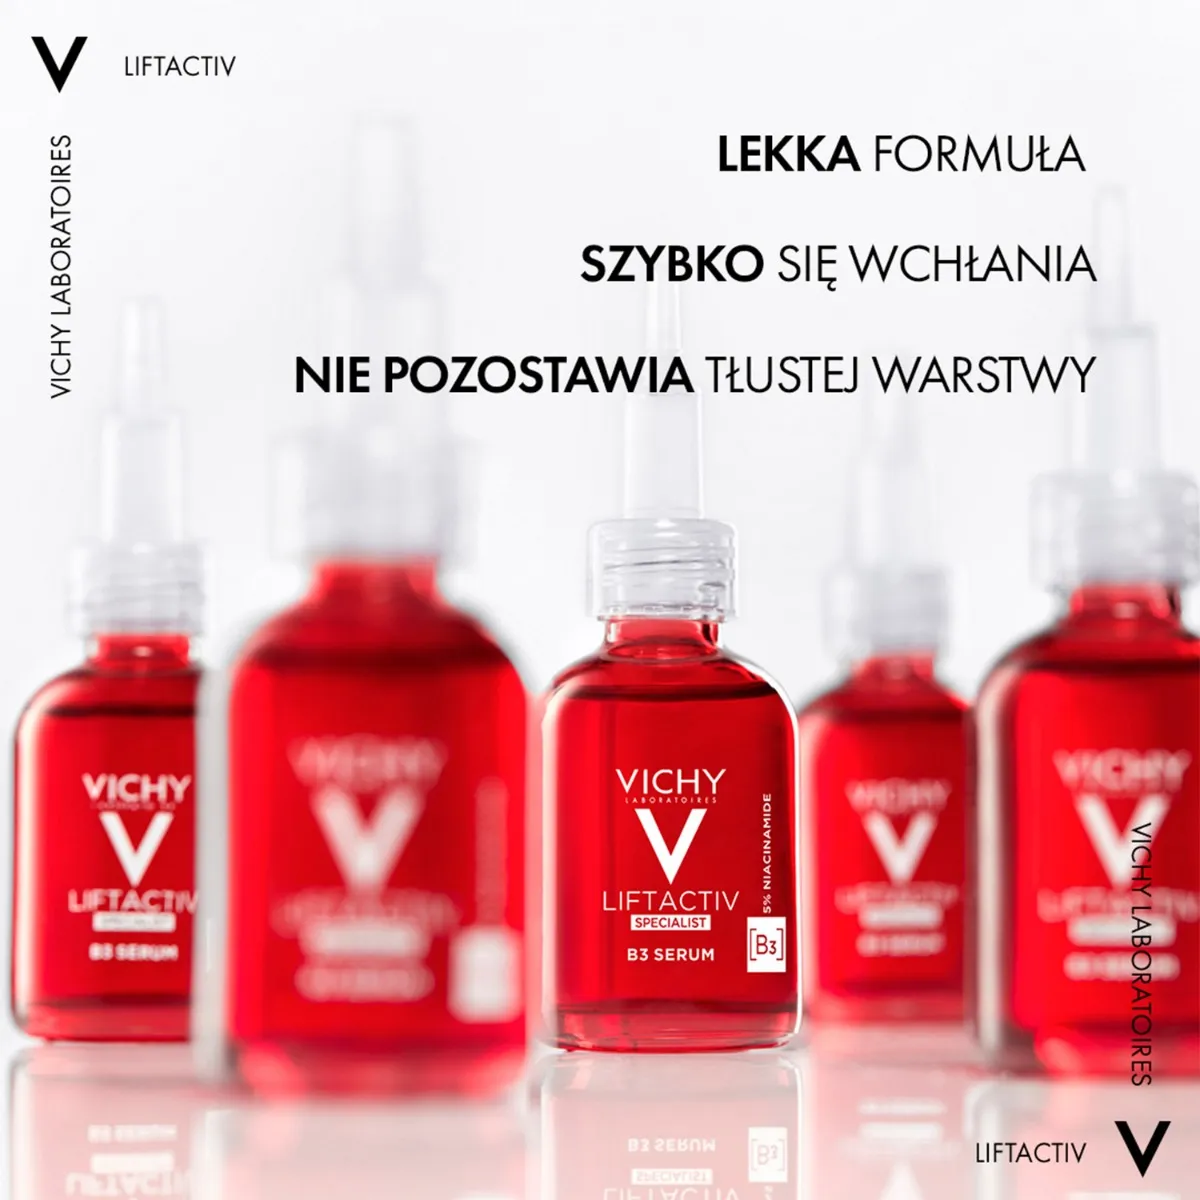 Vichy Liftactiv Specialist B3 Serum redukujące przebarwienia i zmarszczki, 30 ml 